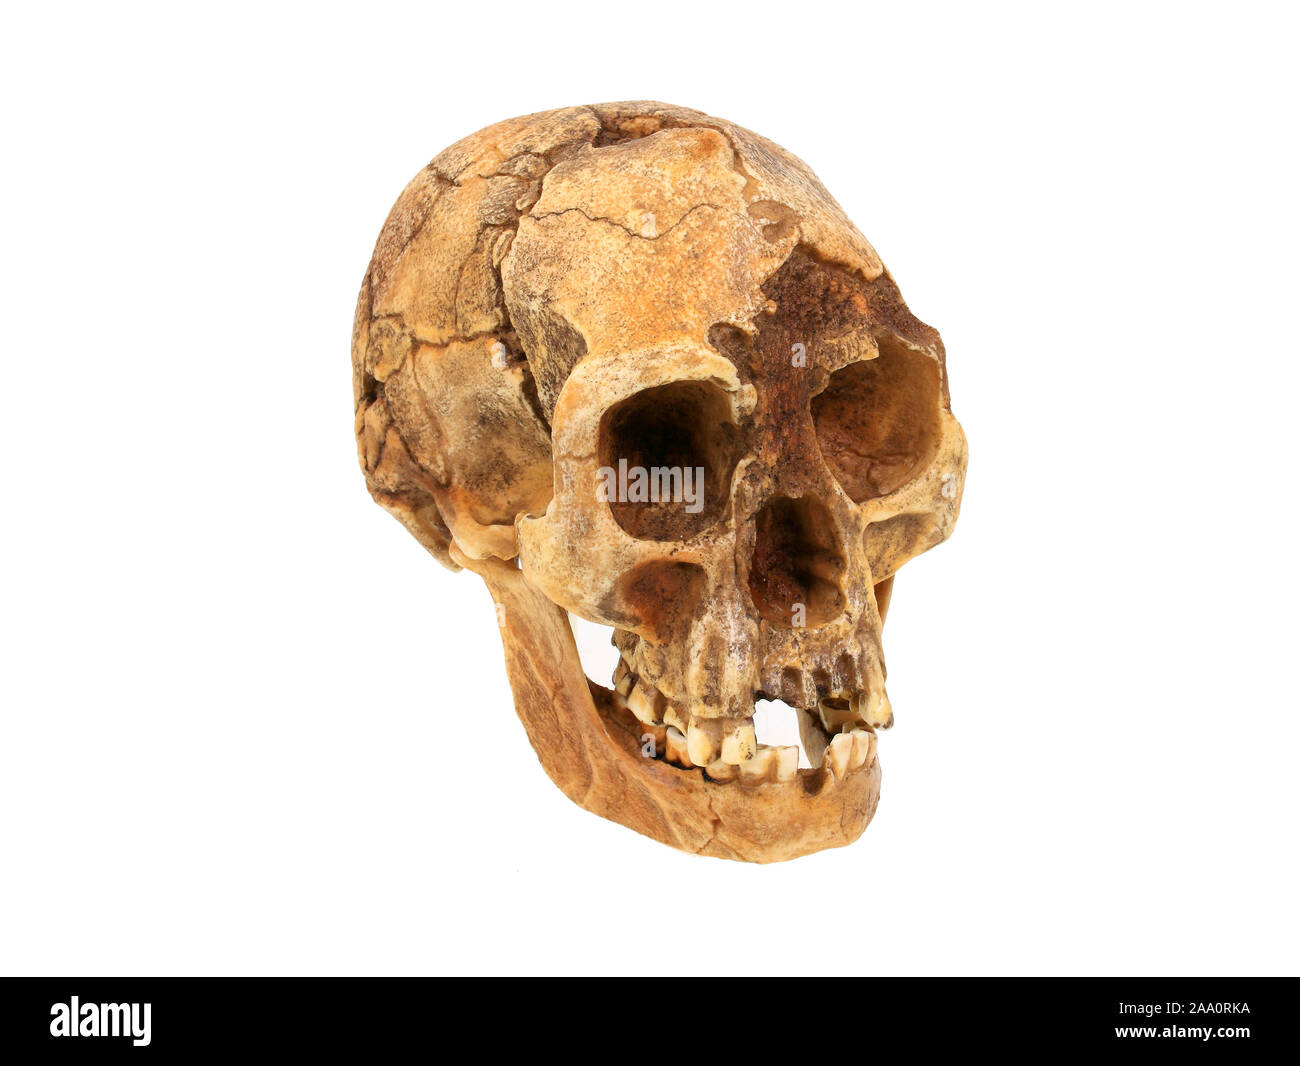 Stammesgeschichte der Menschheit, Evolution der Menschen, Stammbaum des Menschen, Schaedelreplik von Homo floresiensis (The Hobbit). Stock Photo